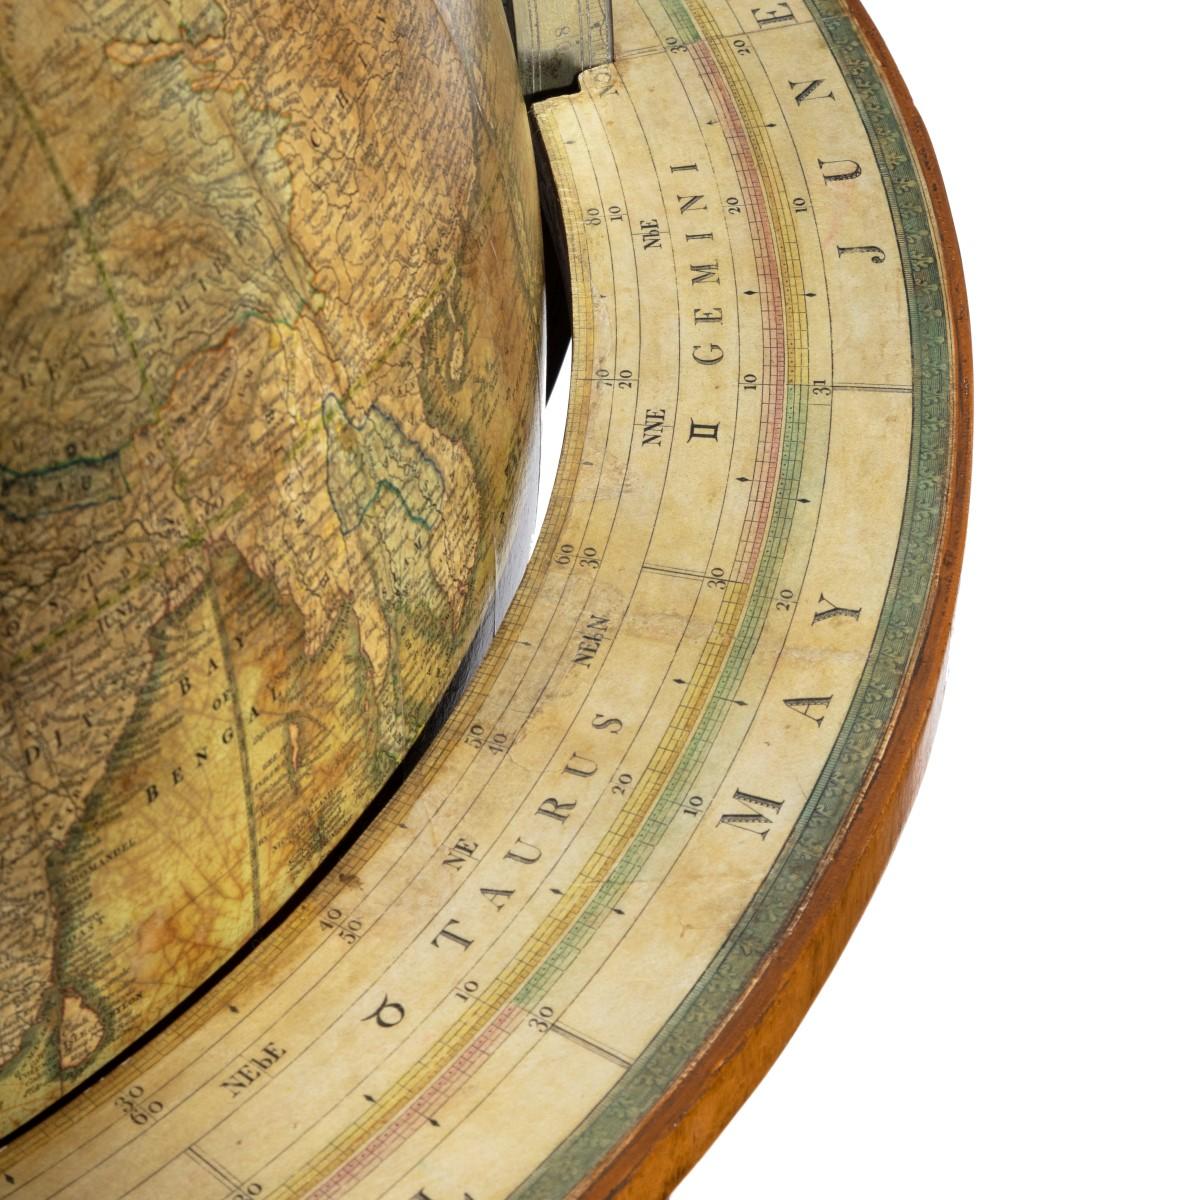 A William IV 20 inch terrestrial globe by Cruchley